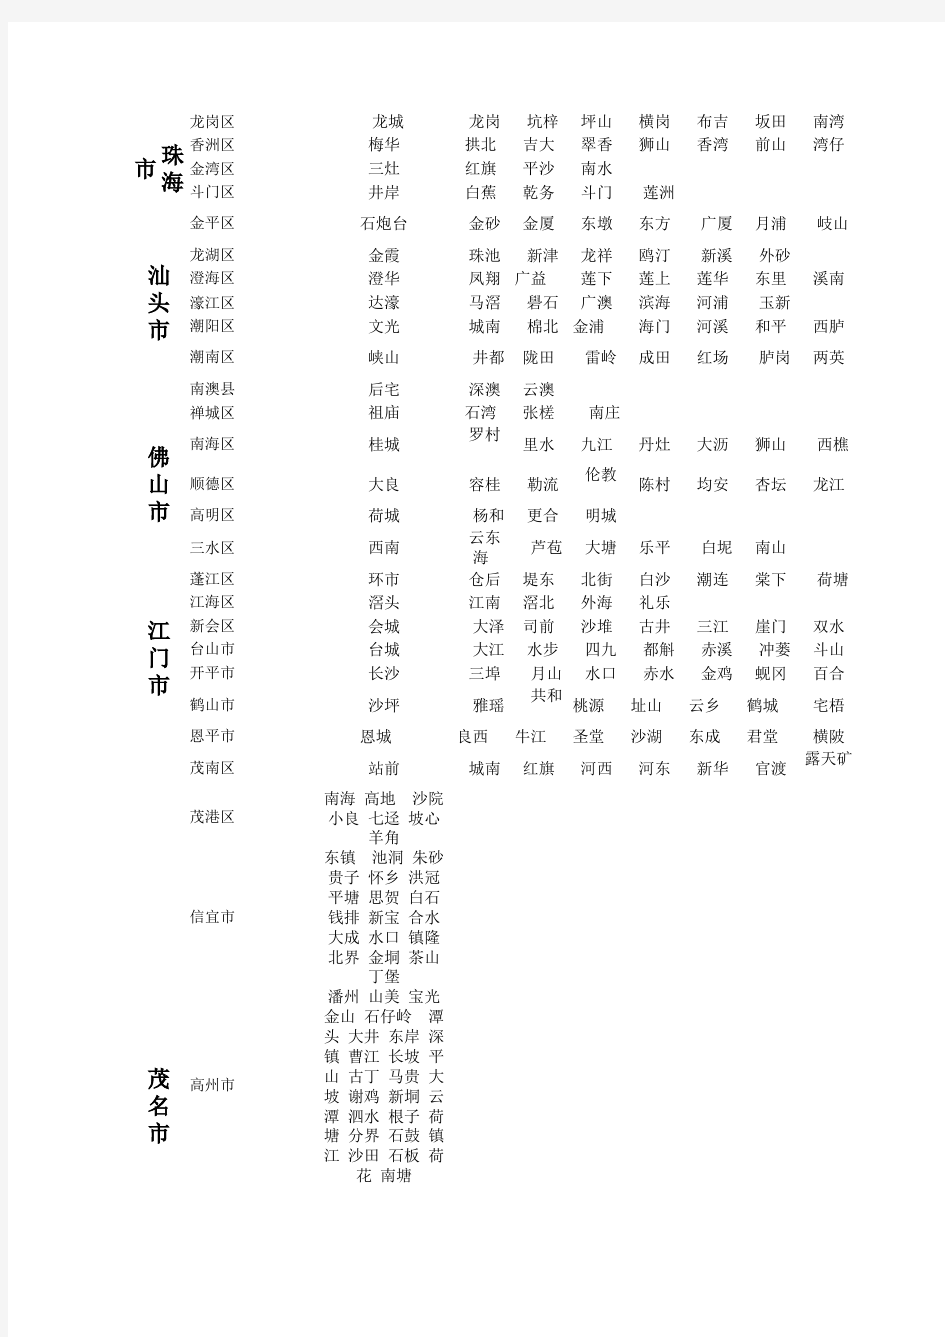 广东省镇级行政区域表